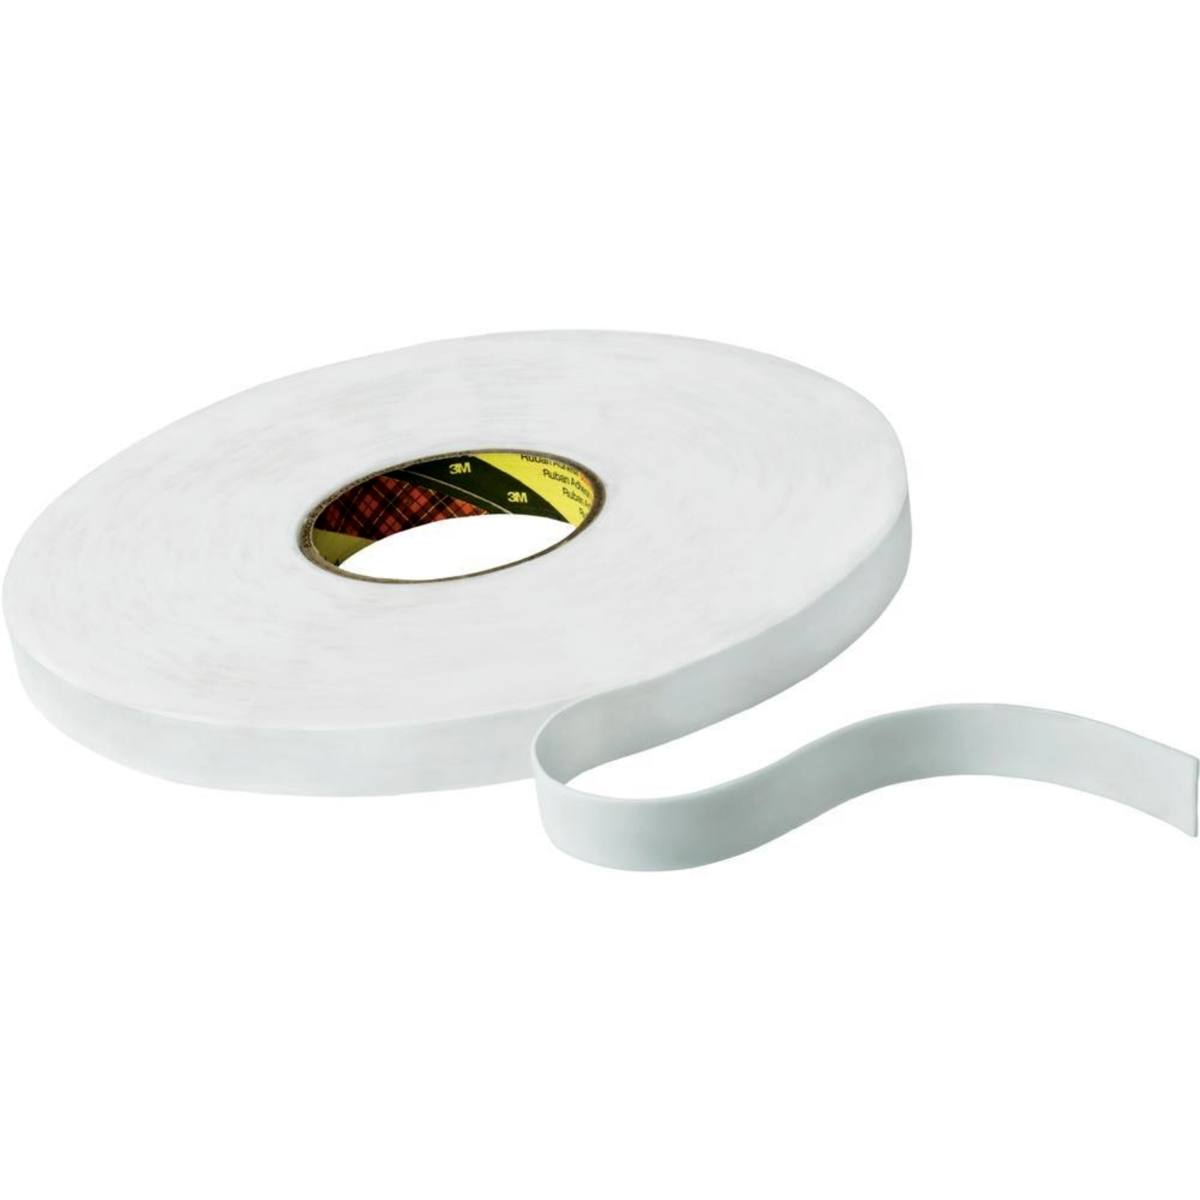 Nastro adesivo 3M in schiuma PE con adesivo in gomma-resina 9528, bianco, 15 mm x 66 m, 0,8 mm